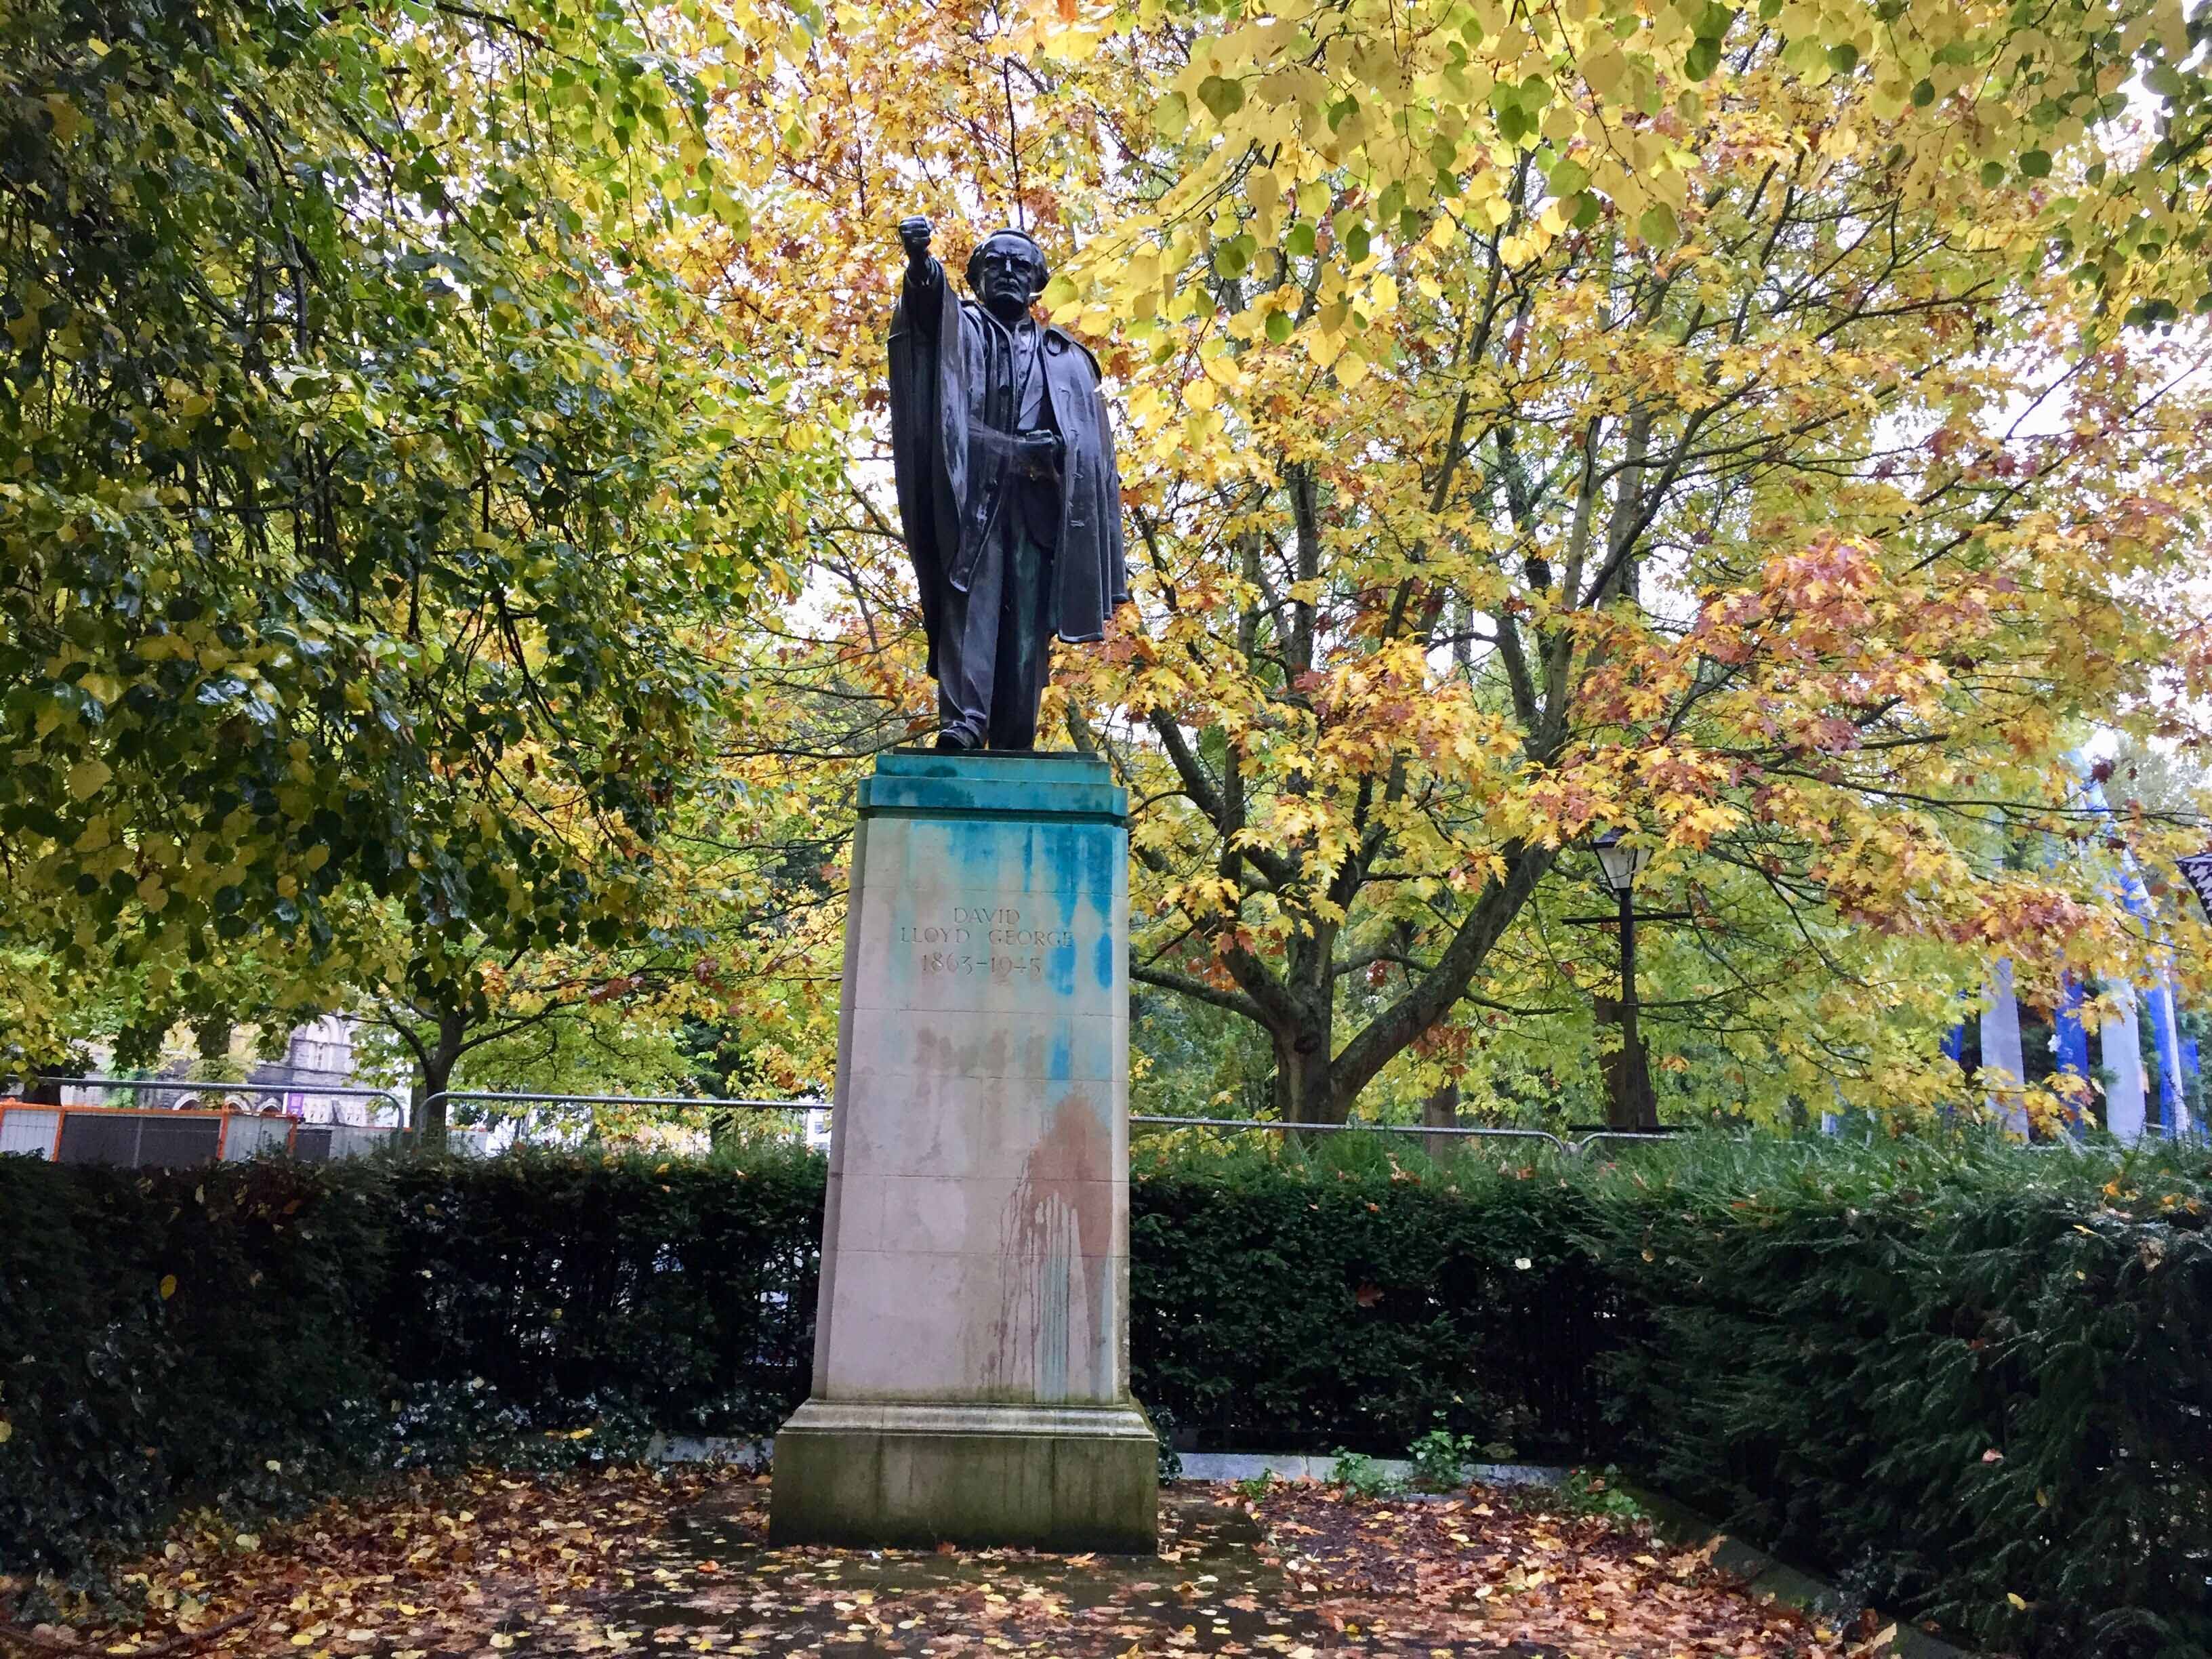 Who Was David Lloyd George?